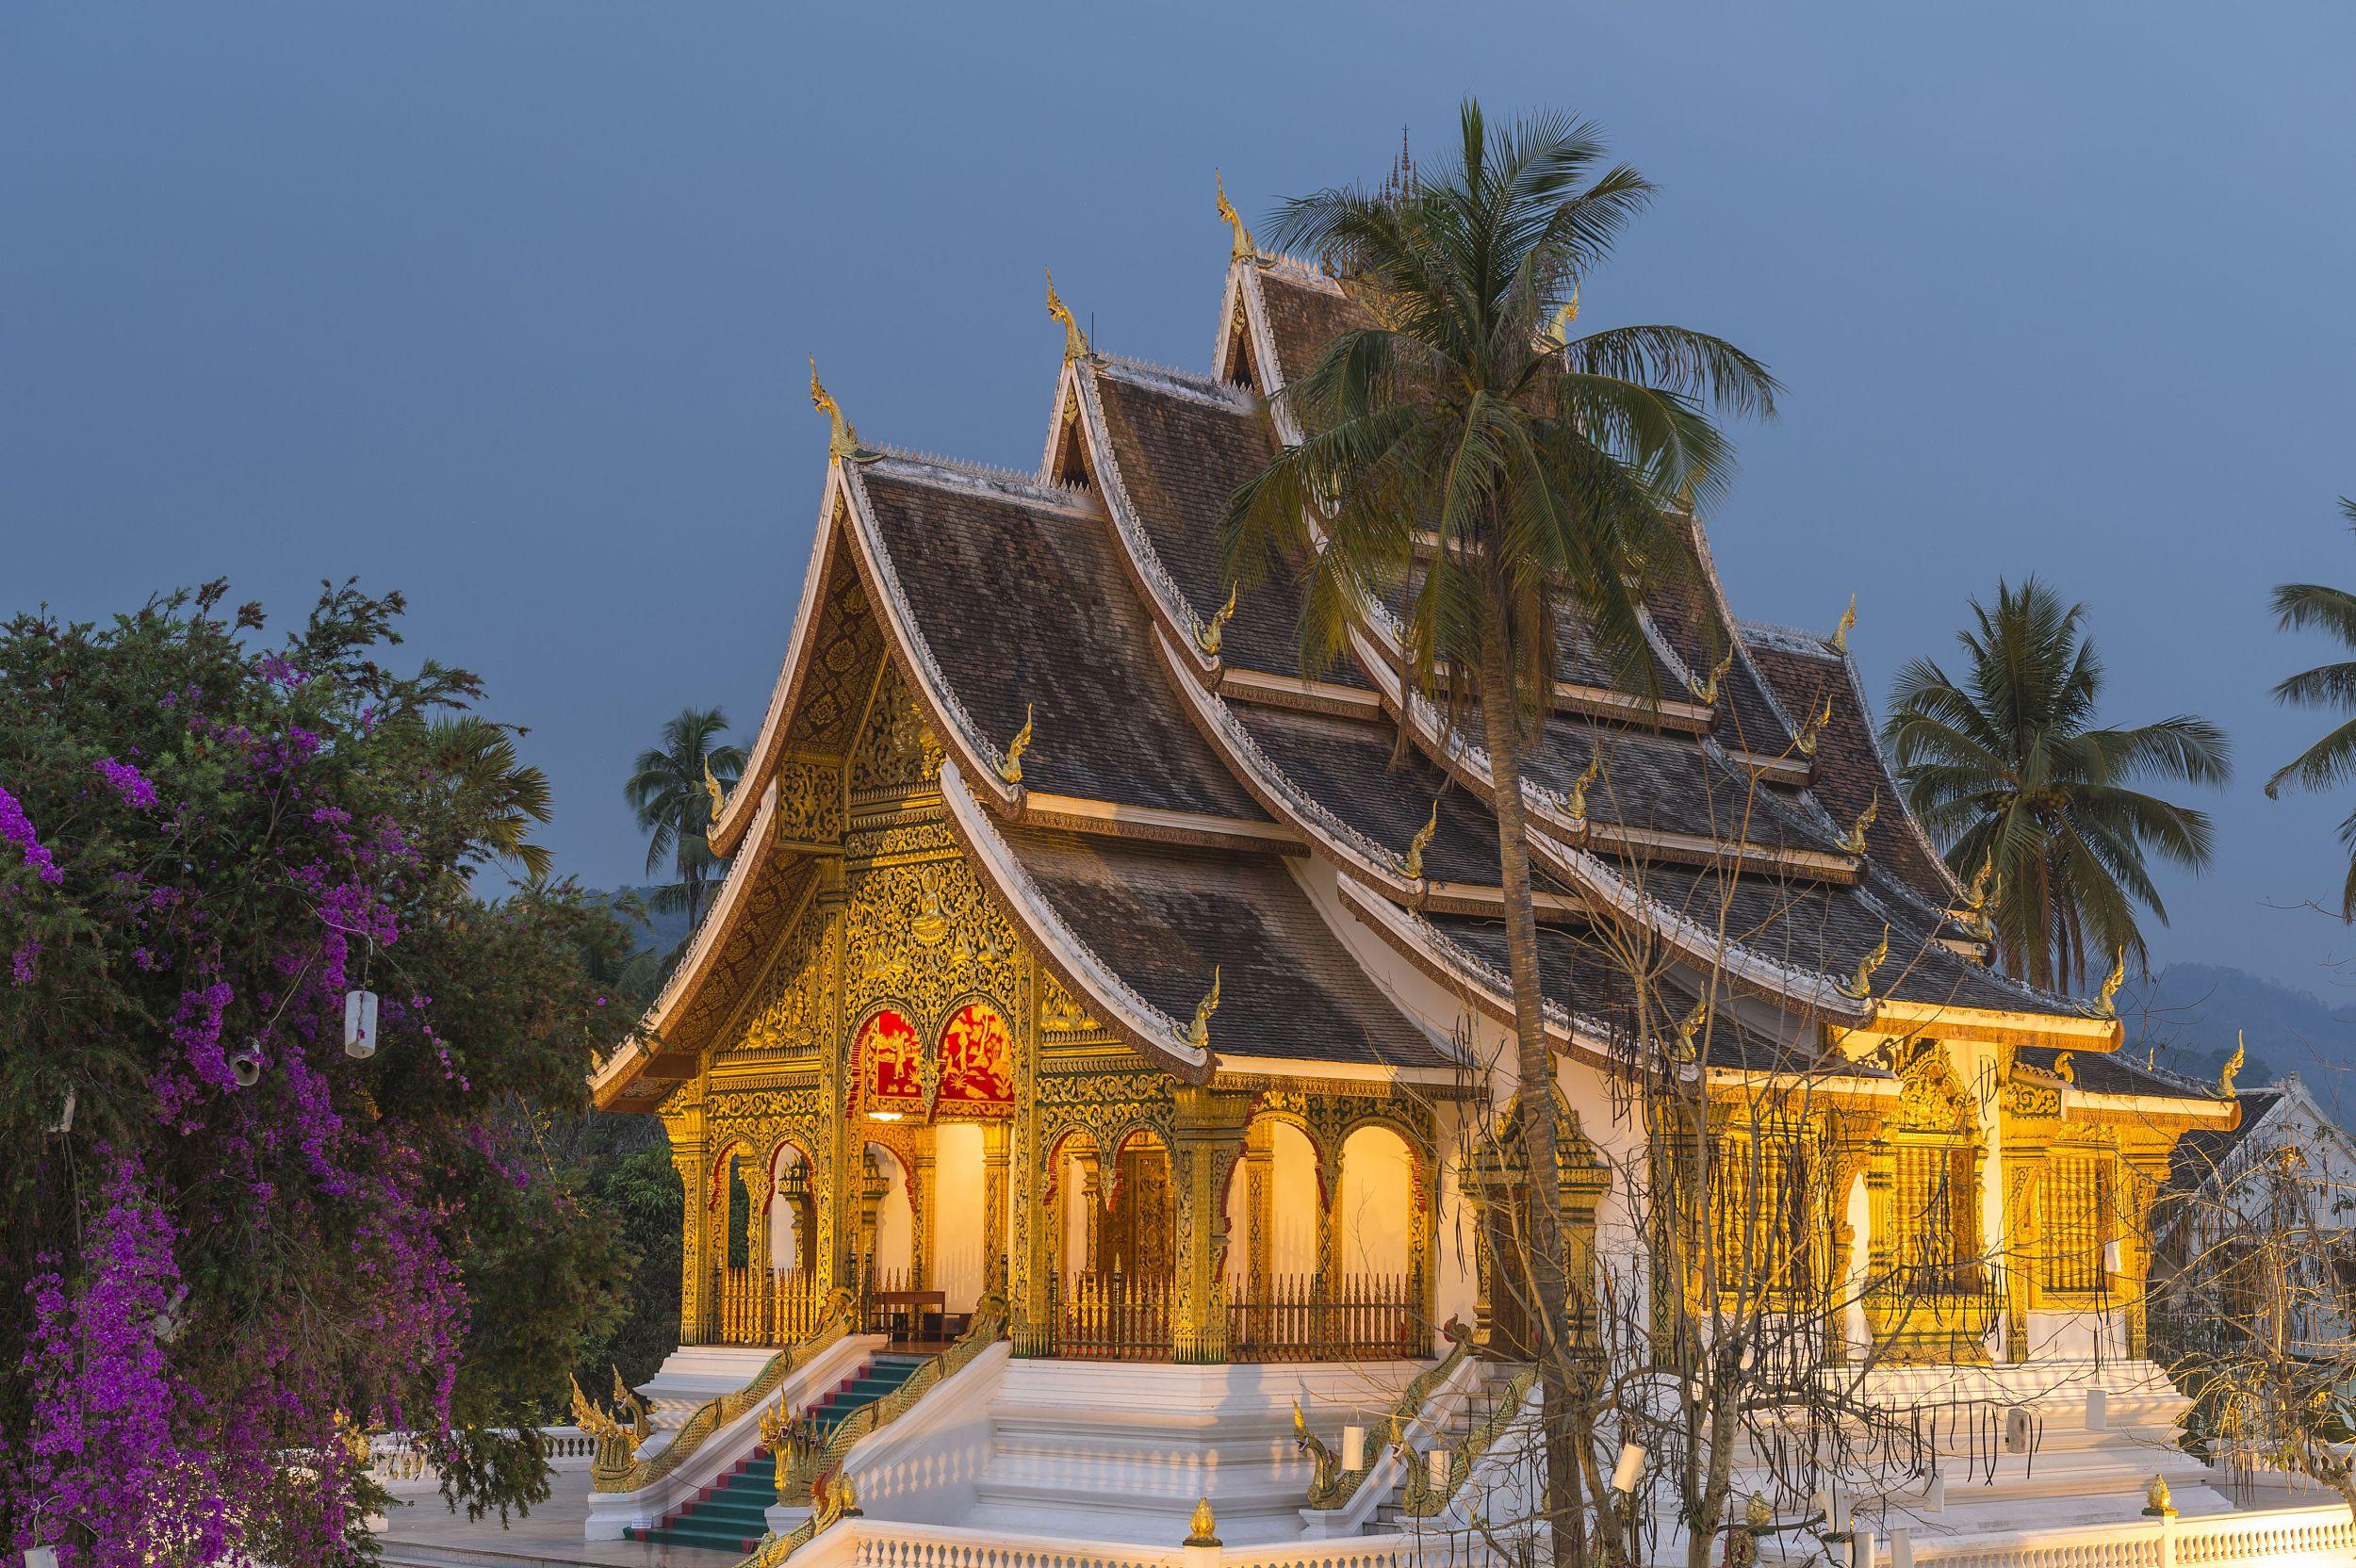 海神庙 - 巴厘岛景点 - 华侨城旅游网